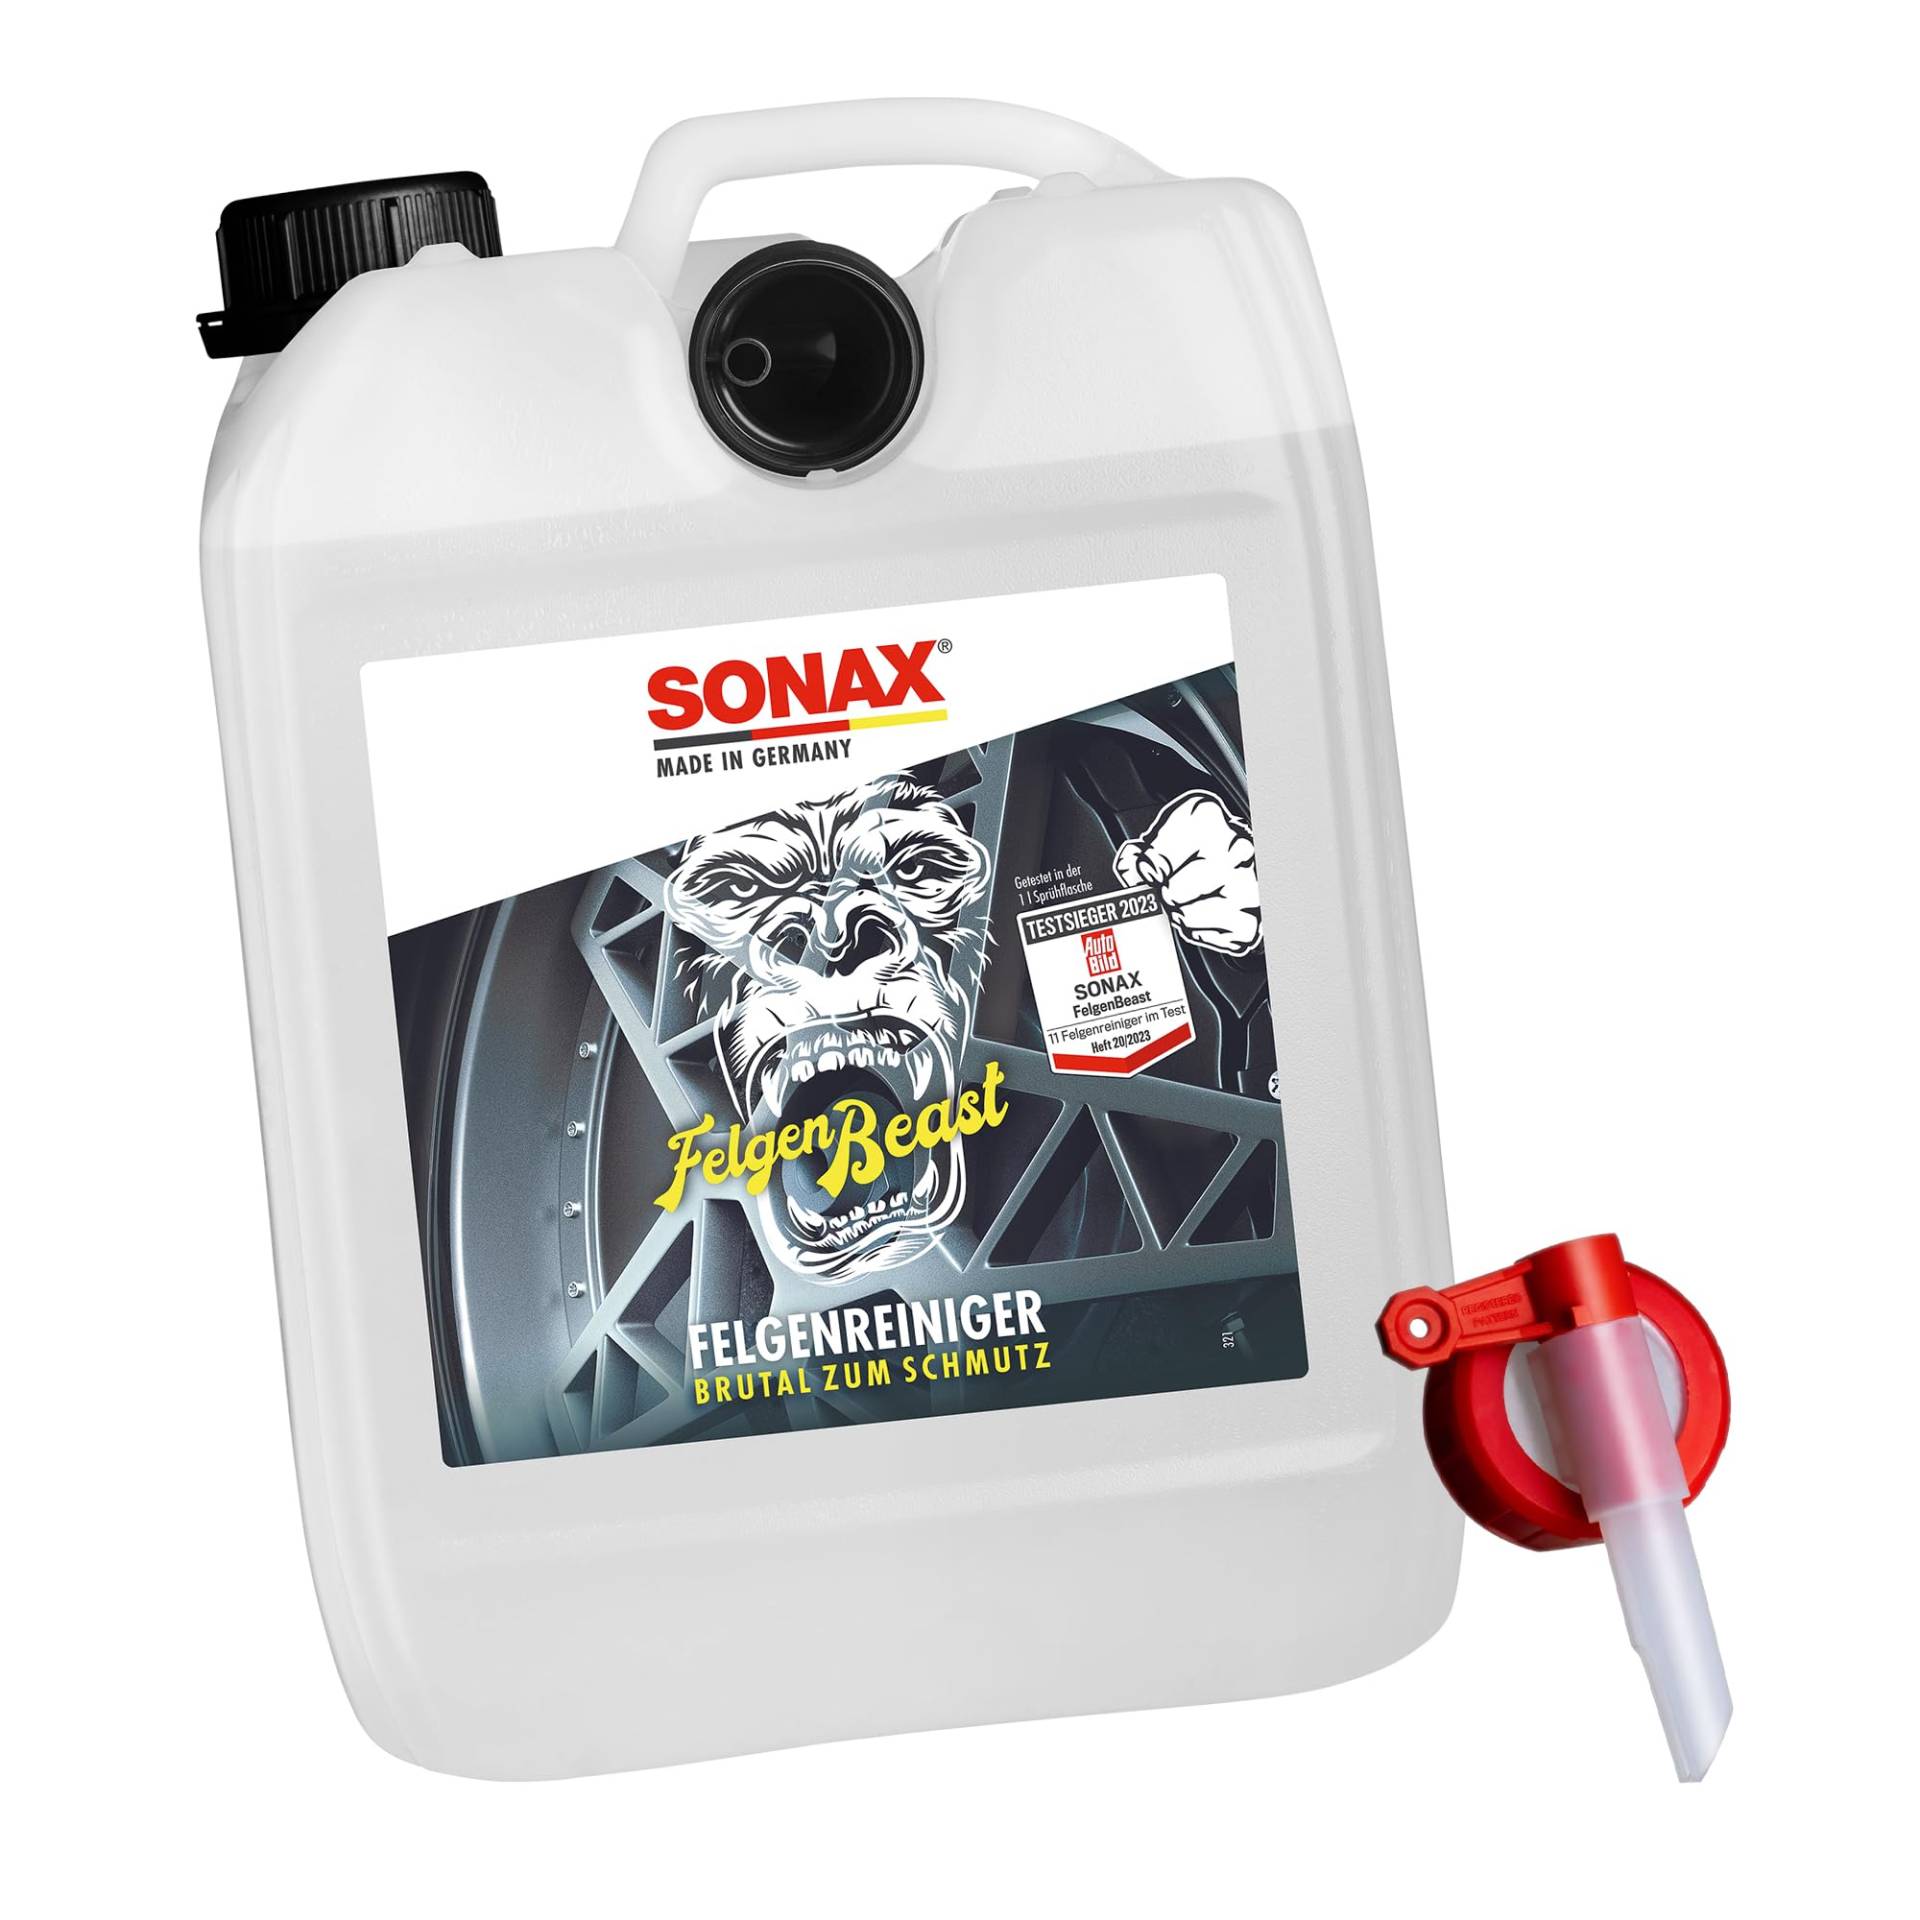 Auto Felgen Reinigung Bundle: SONAX FelgenBeast Felgenreinger säurefrei im 5L Kanister mit praktischem Ausgießhahn von detailmate